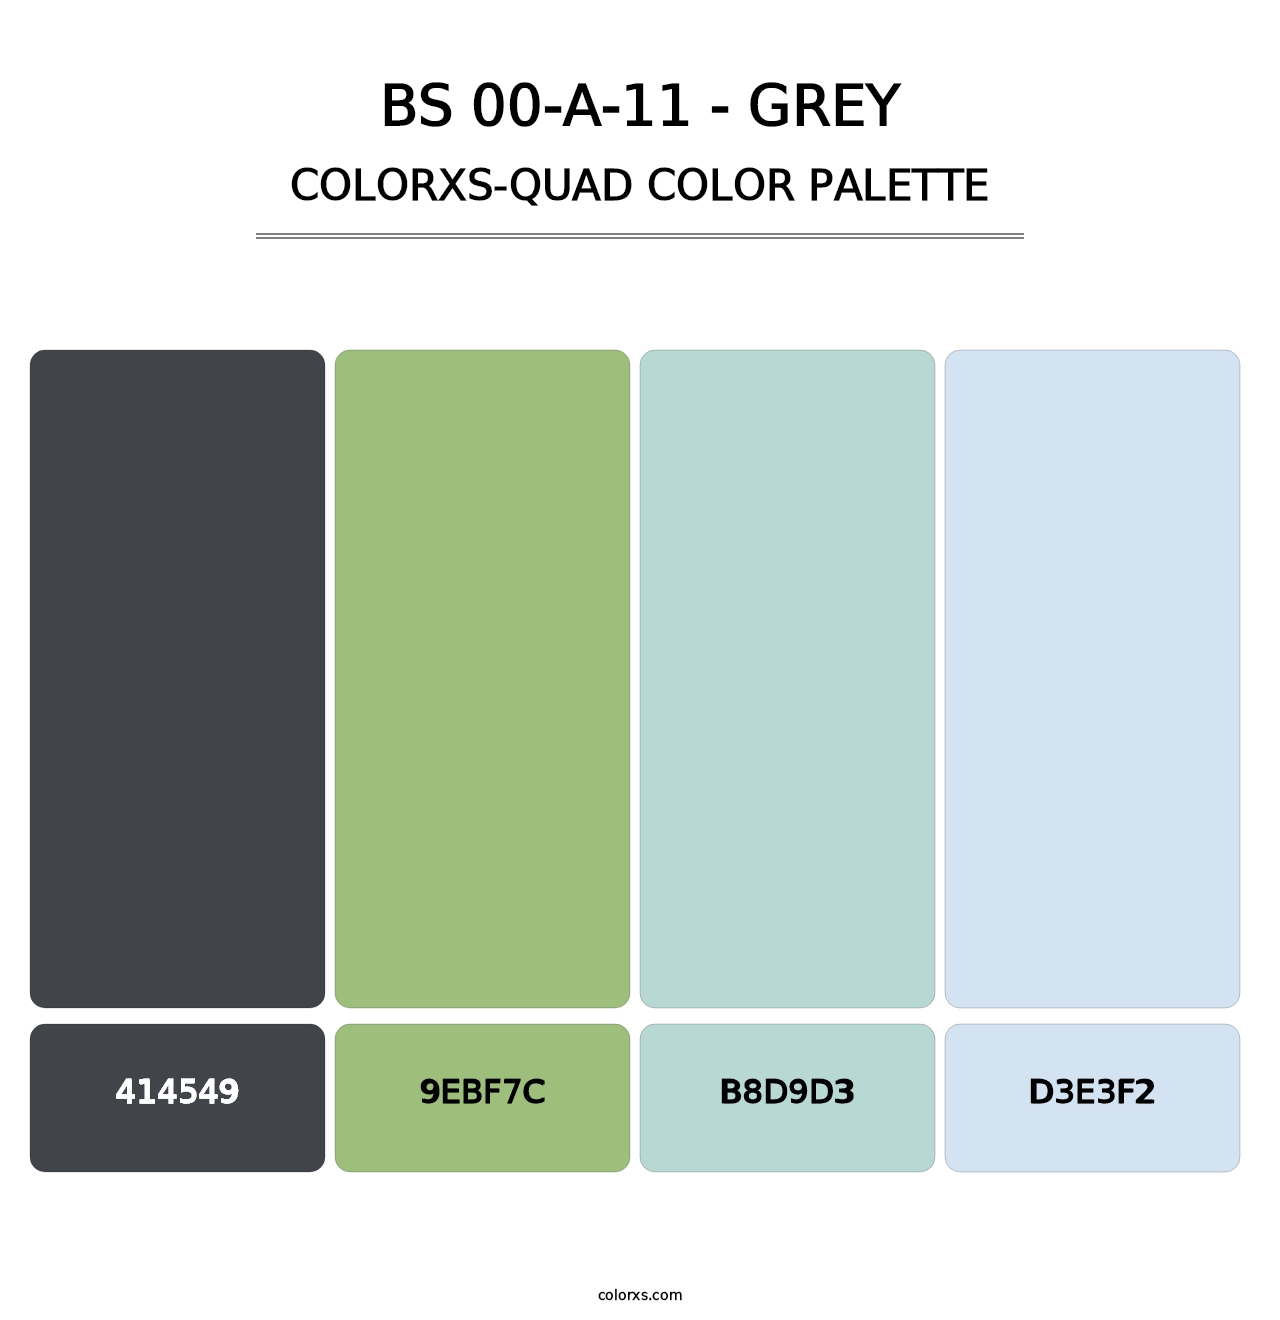 BS 00-A-11 - Grey - Colorxs Quad Palette